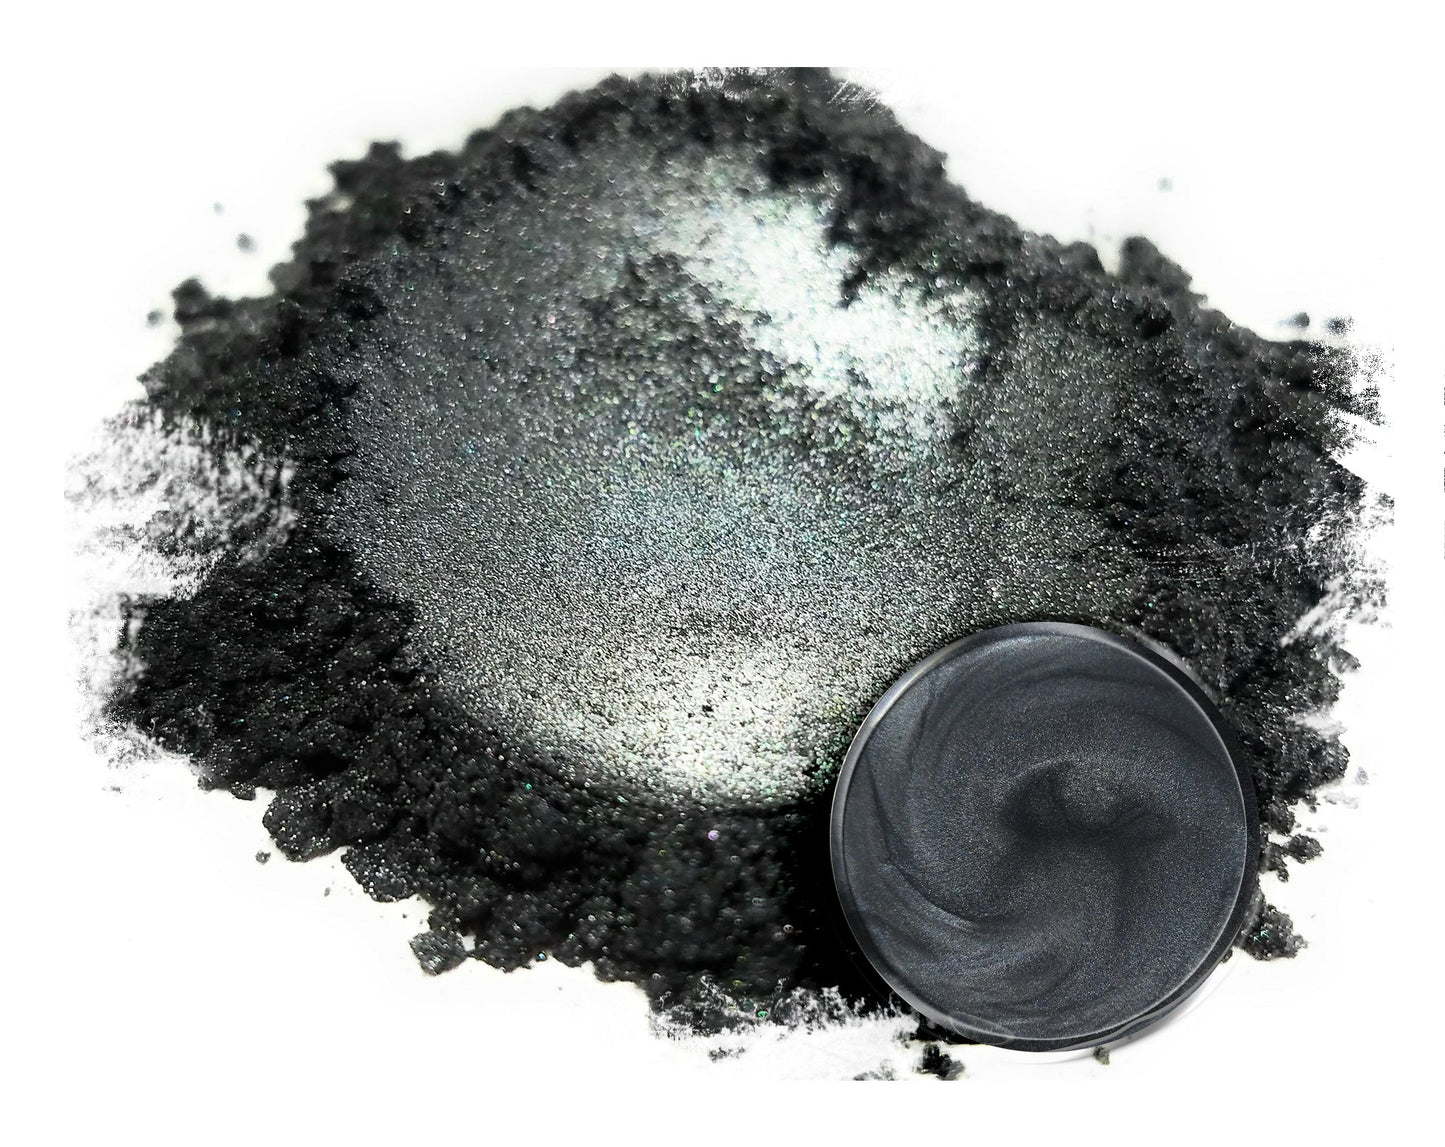 Grey/Silver Mica Powder Pigments